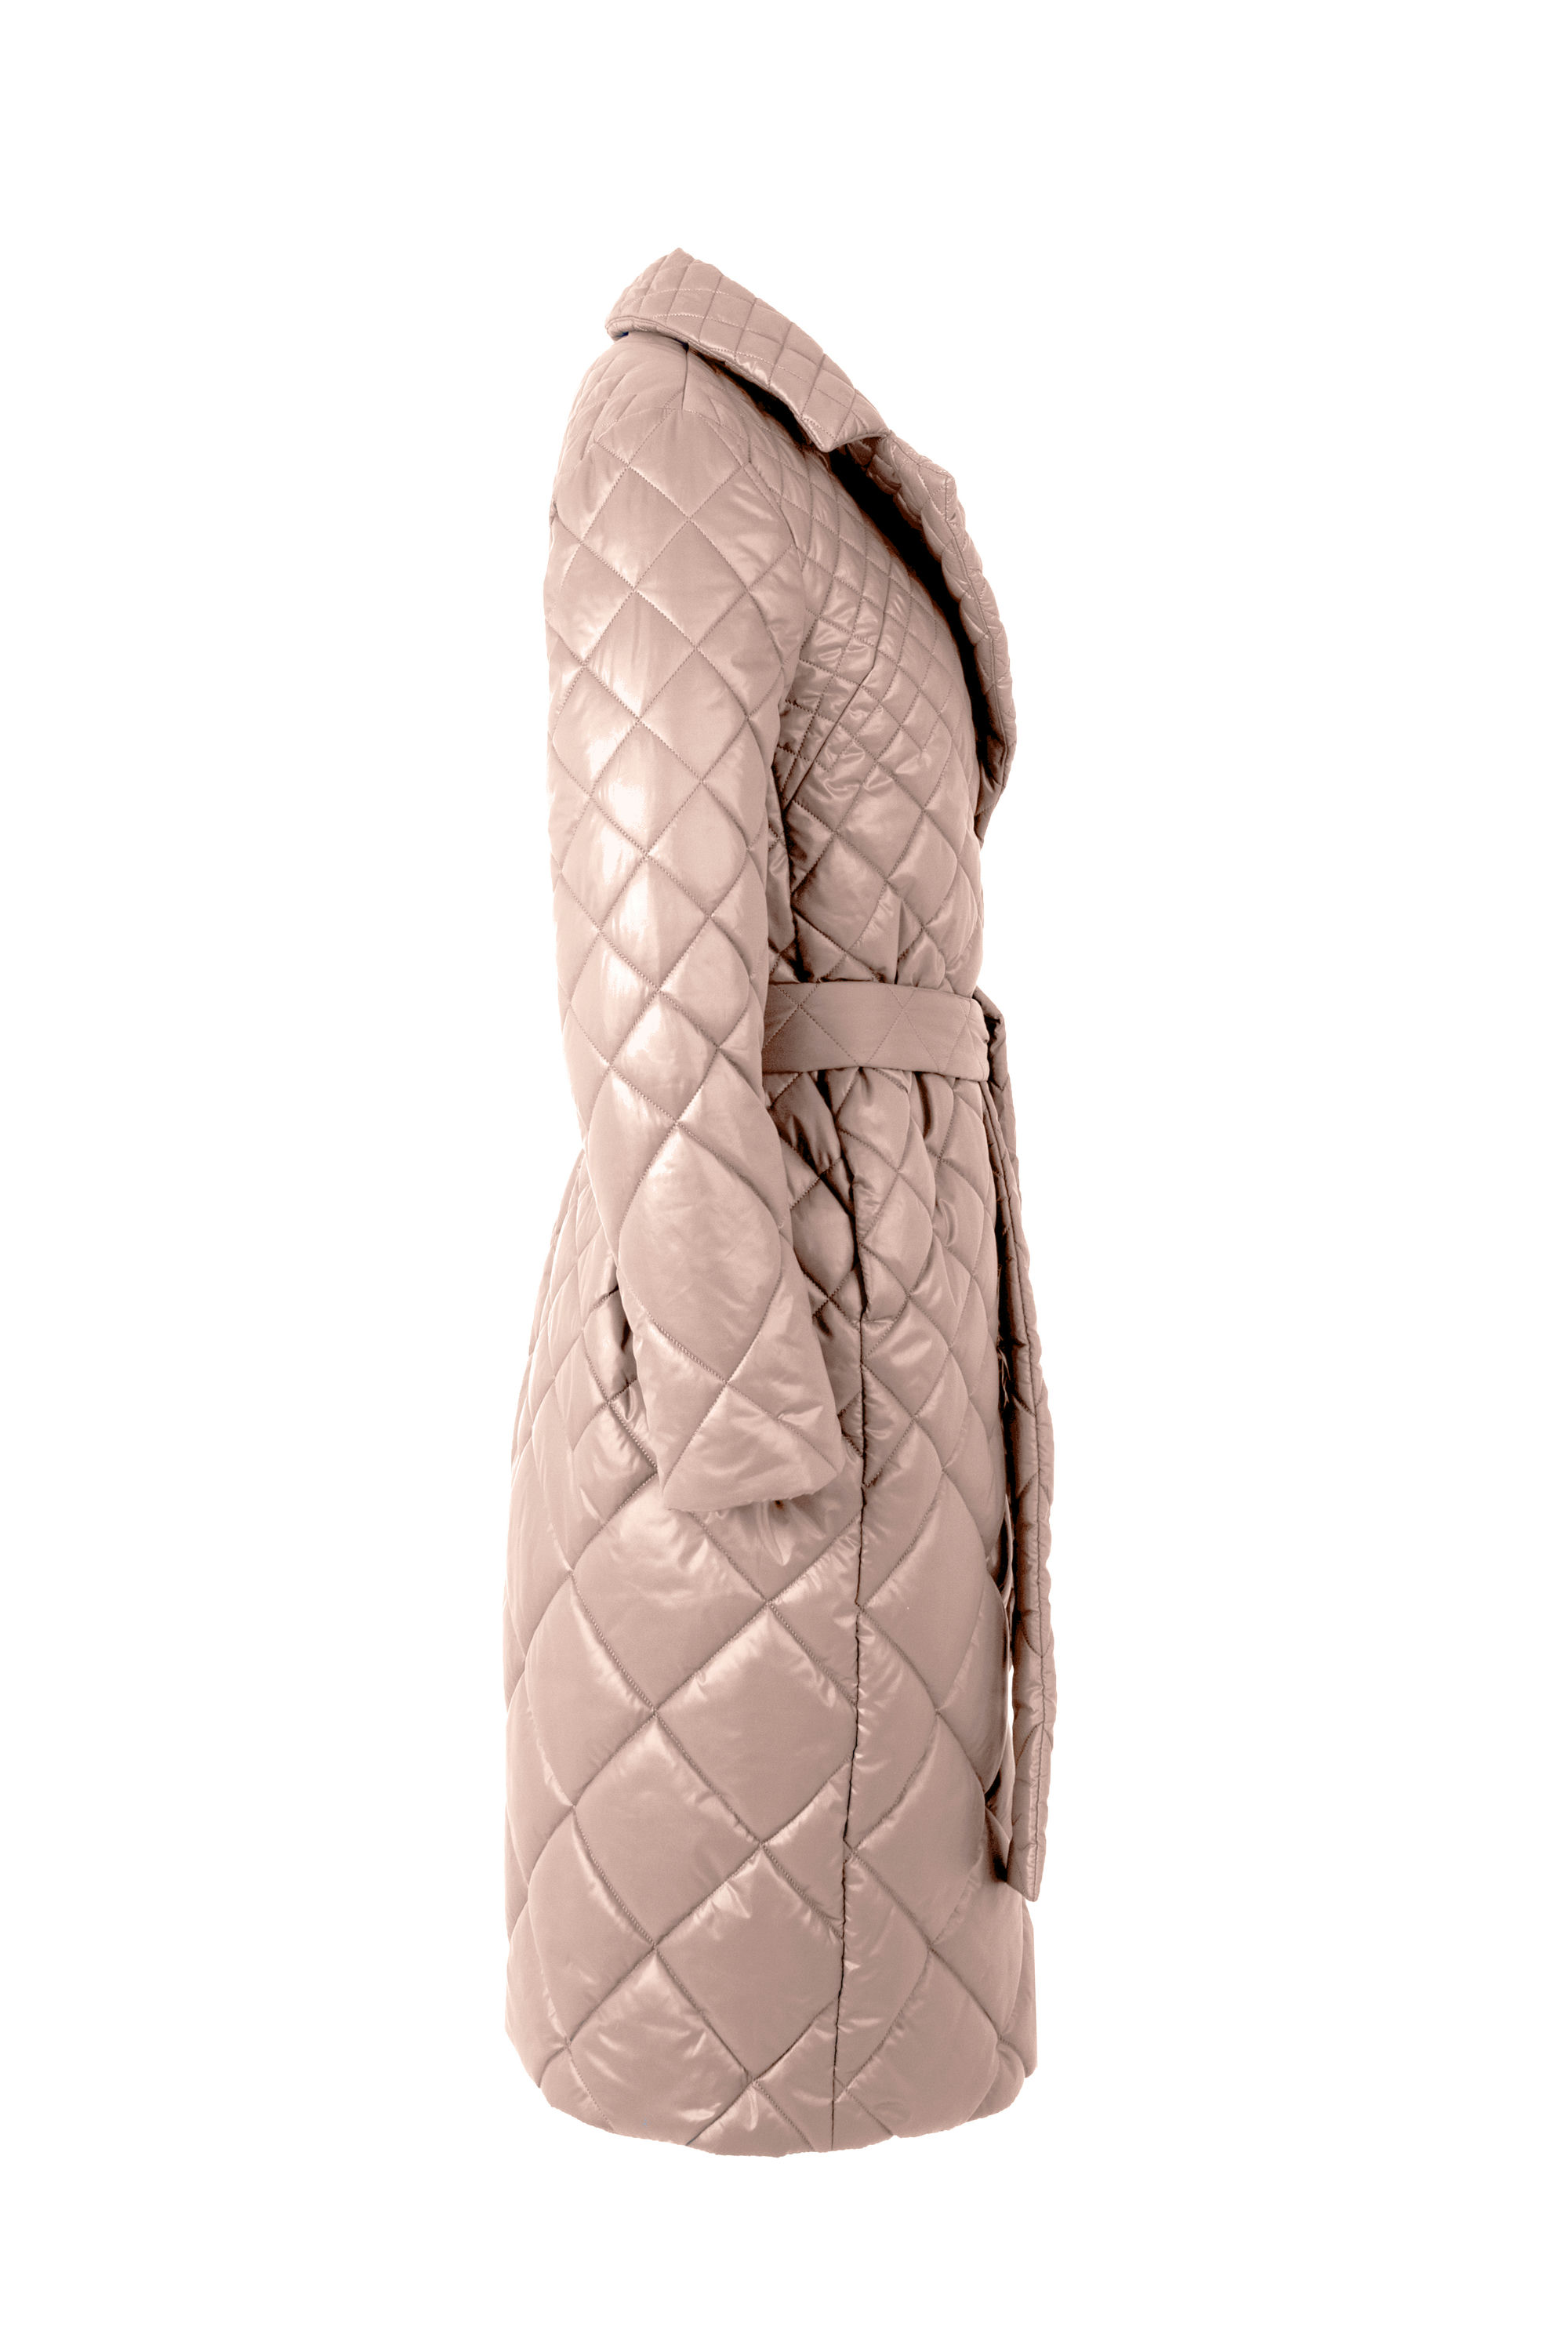 Пальто женское плащевое утепленное 5-12535-1. Фото 7.